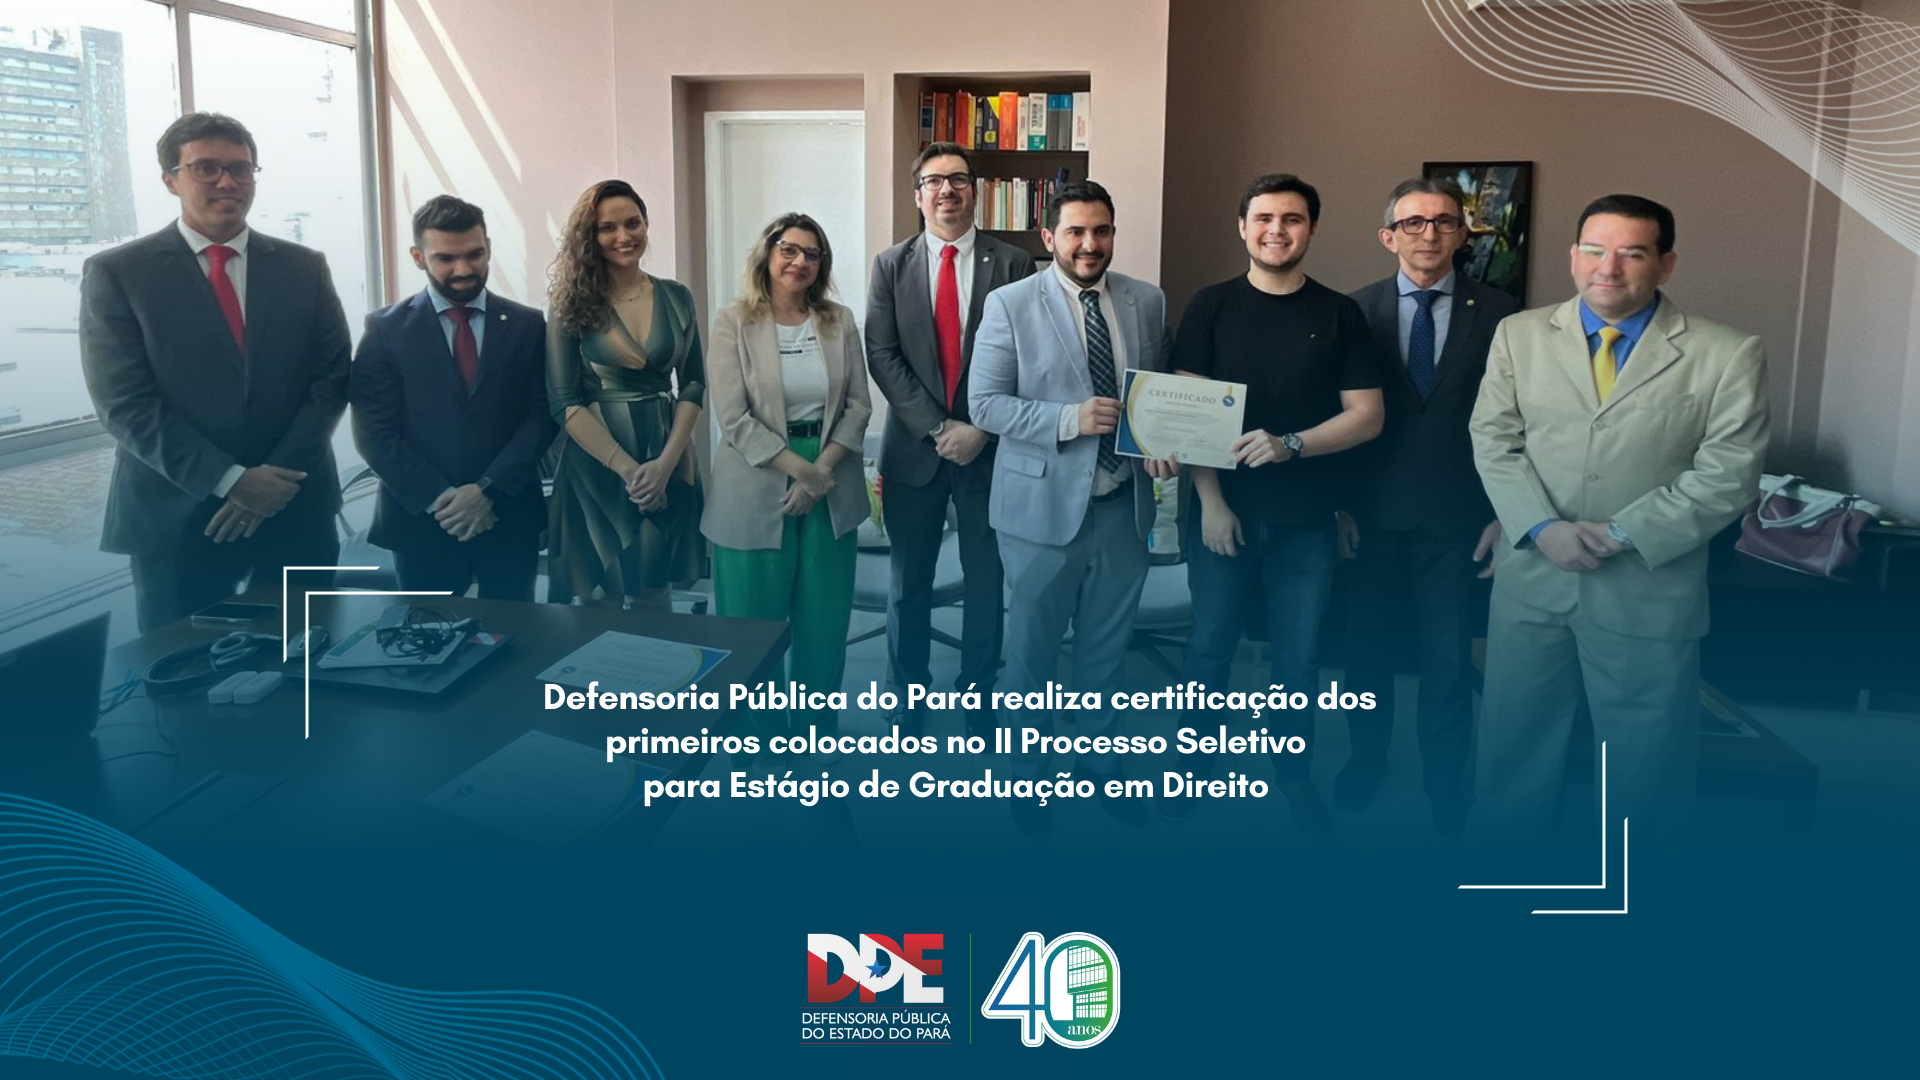 Defensoria Pública do Pará realiza certificação dos primeiros colocados no II Processo Seletivo para Estágio de Graduação em Direito 